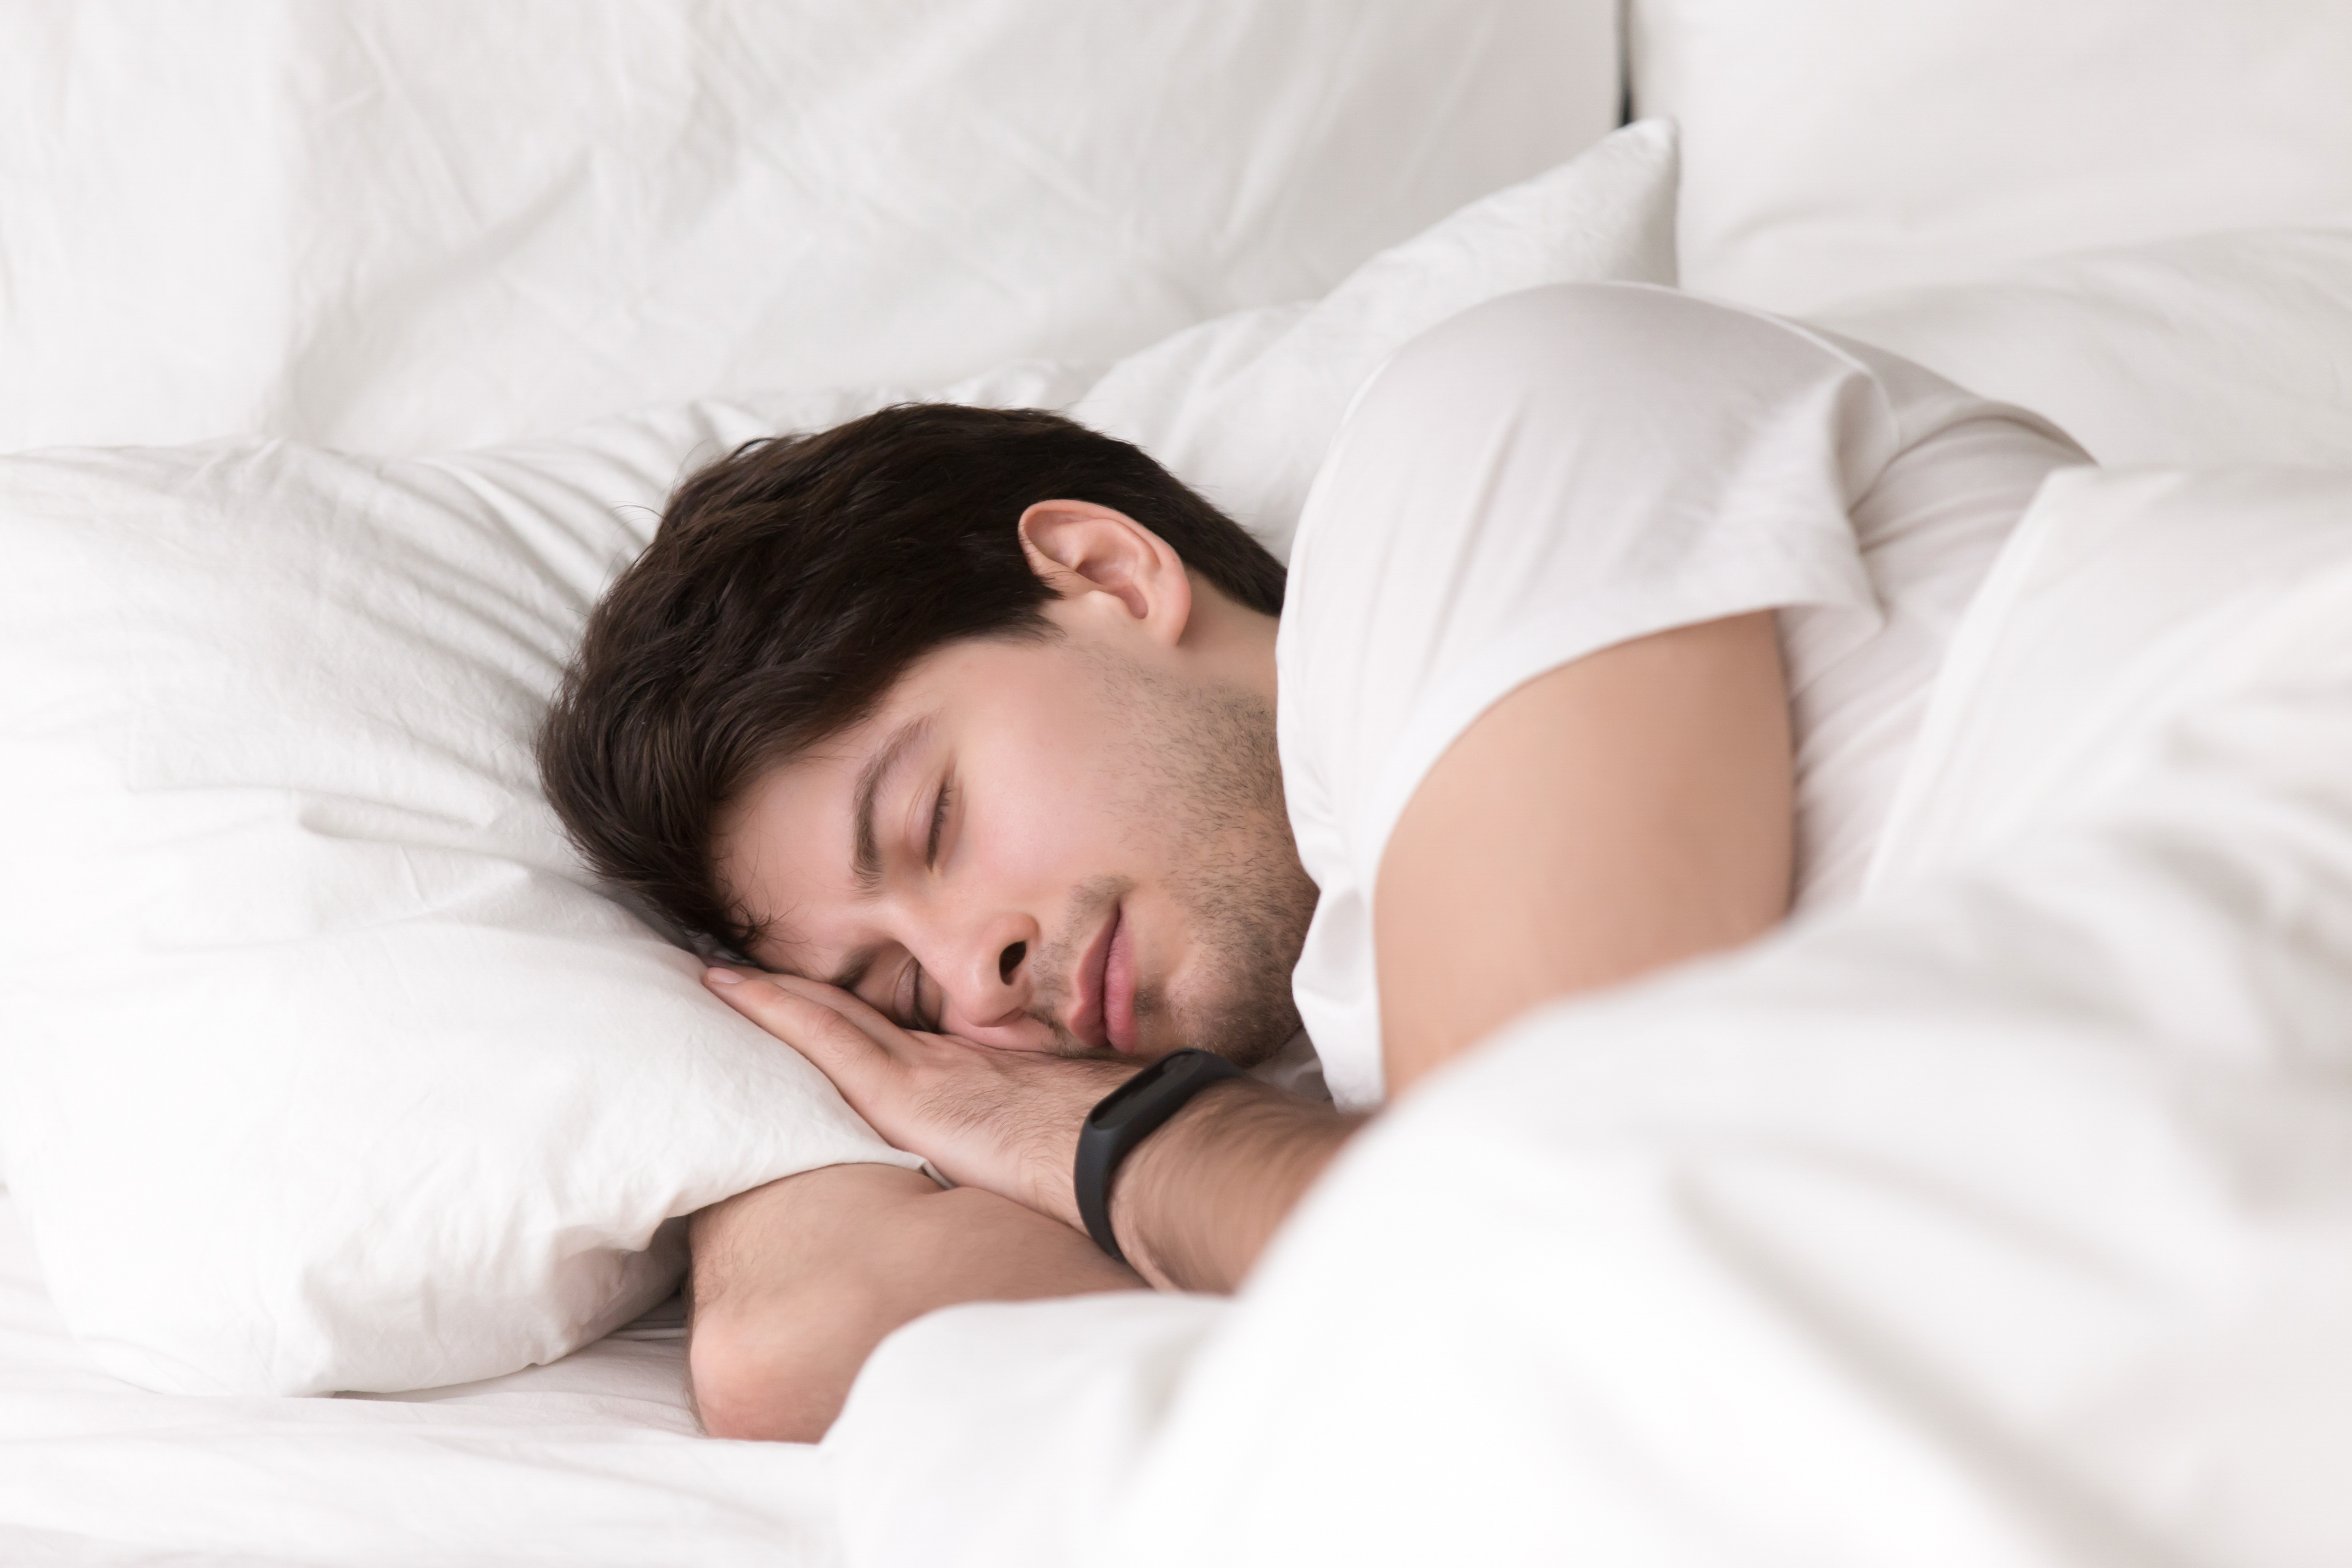 充足的睡眠也能帮助改善脸上长痘的问题。-图取自freepik-